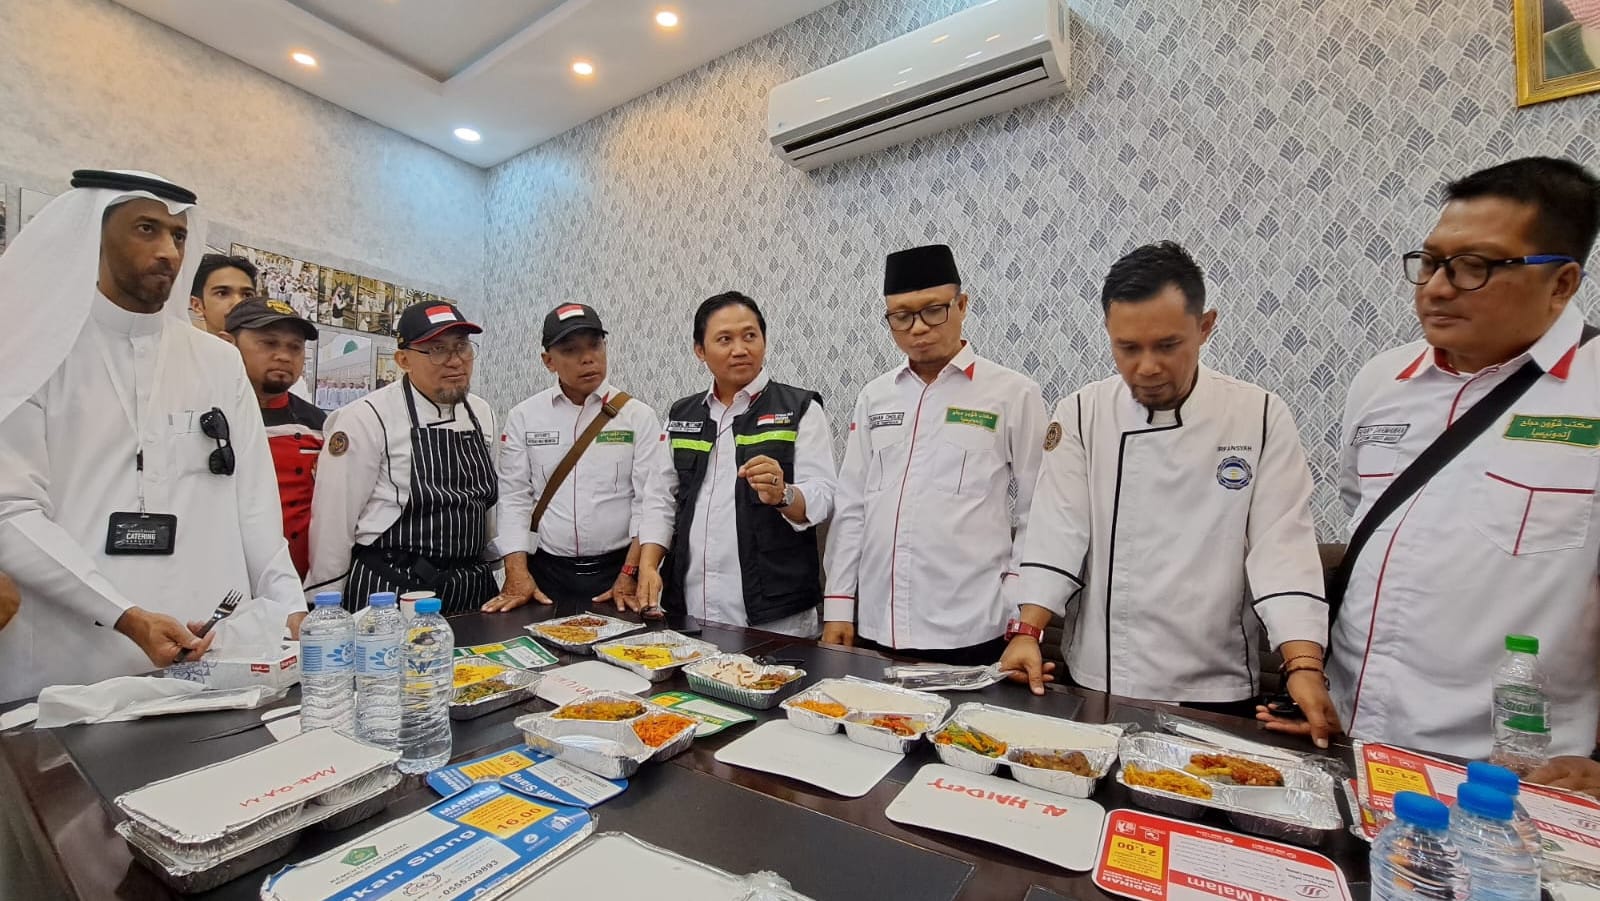 Coba Hasil Masakan Dapur Penyedia Katering Jemaah Haji, Subhan Cholid: Jaga Cita Rasa Indonesia